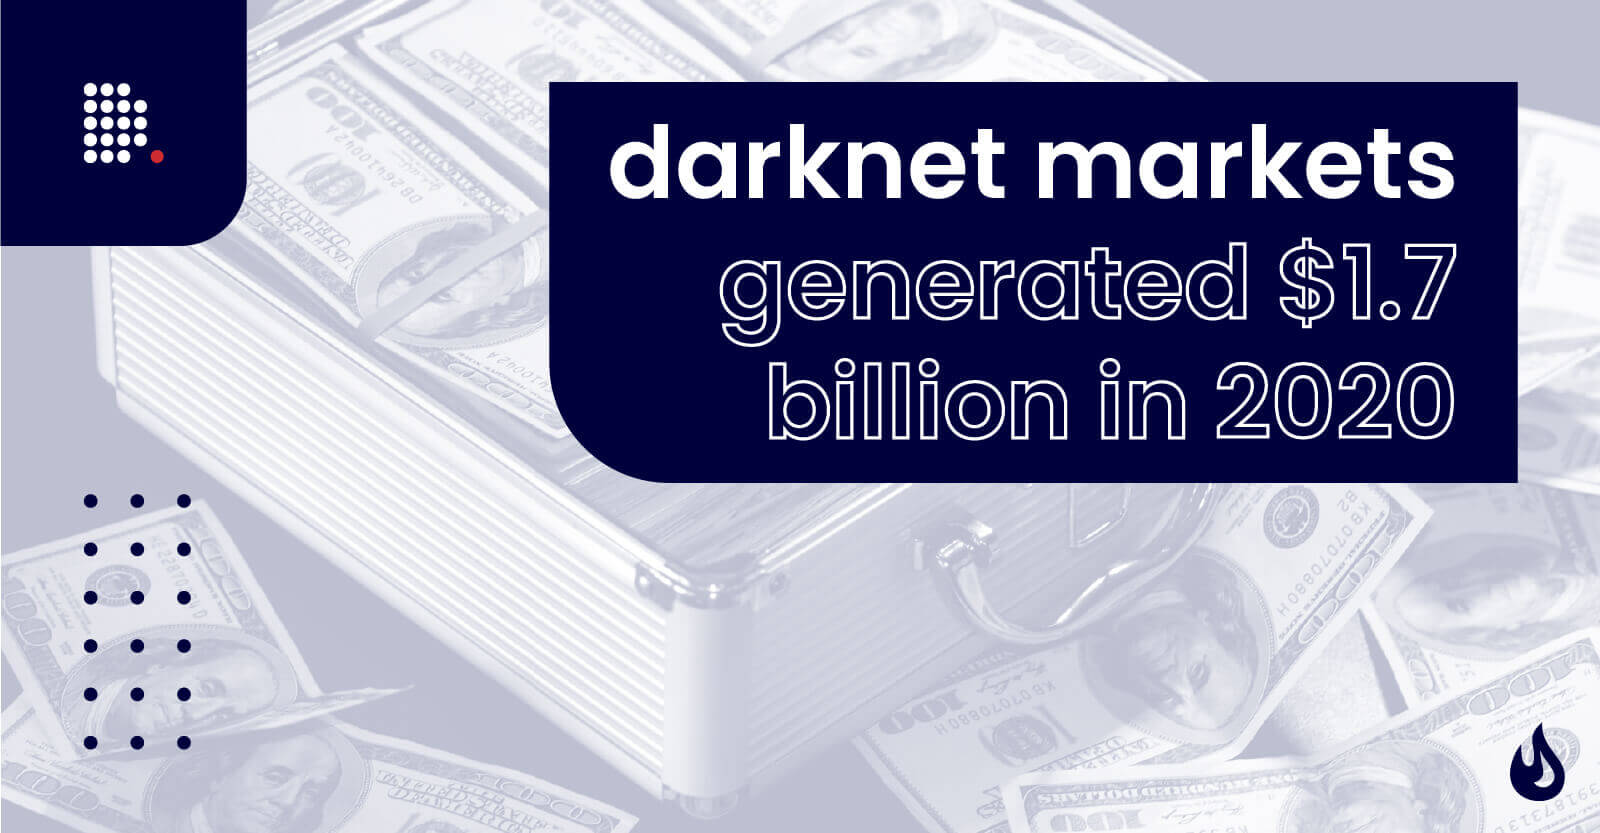 Best Darknet Market For Counterfeit